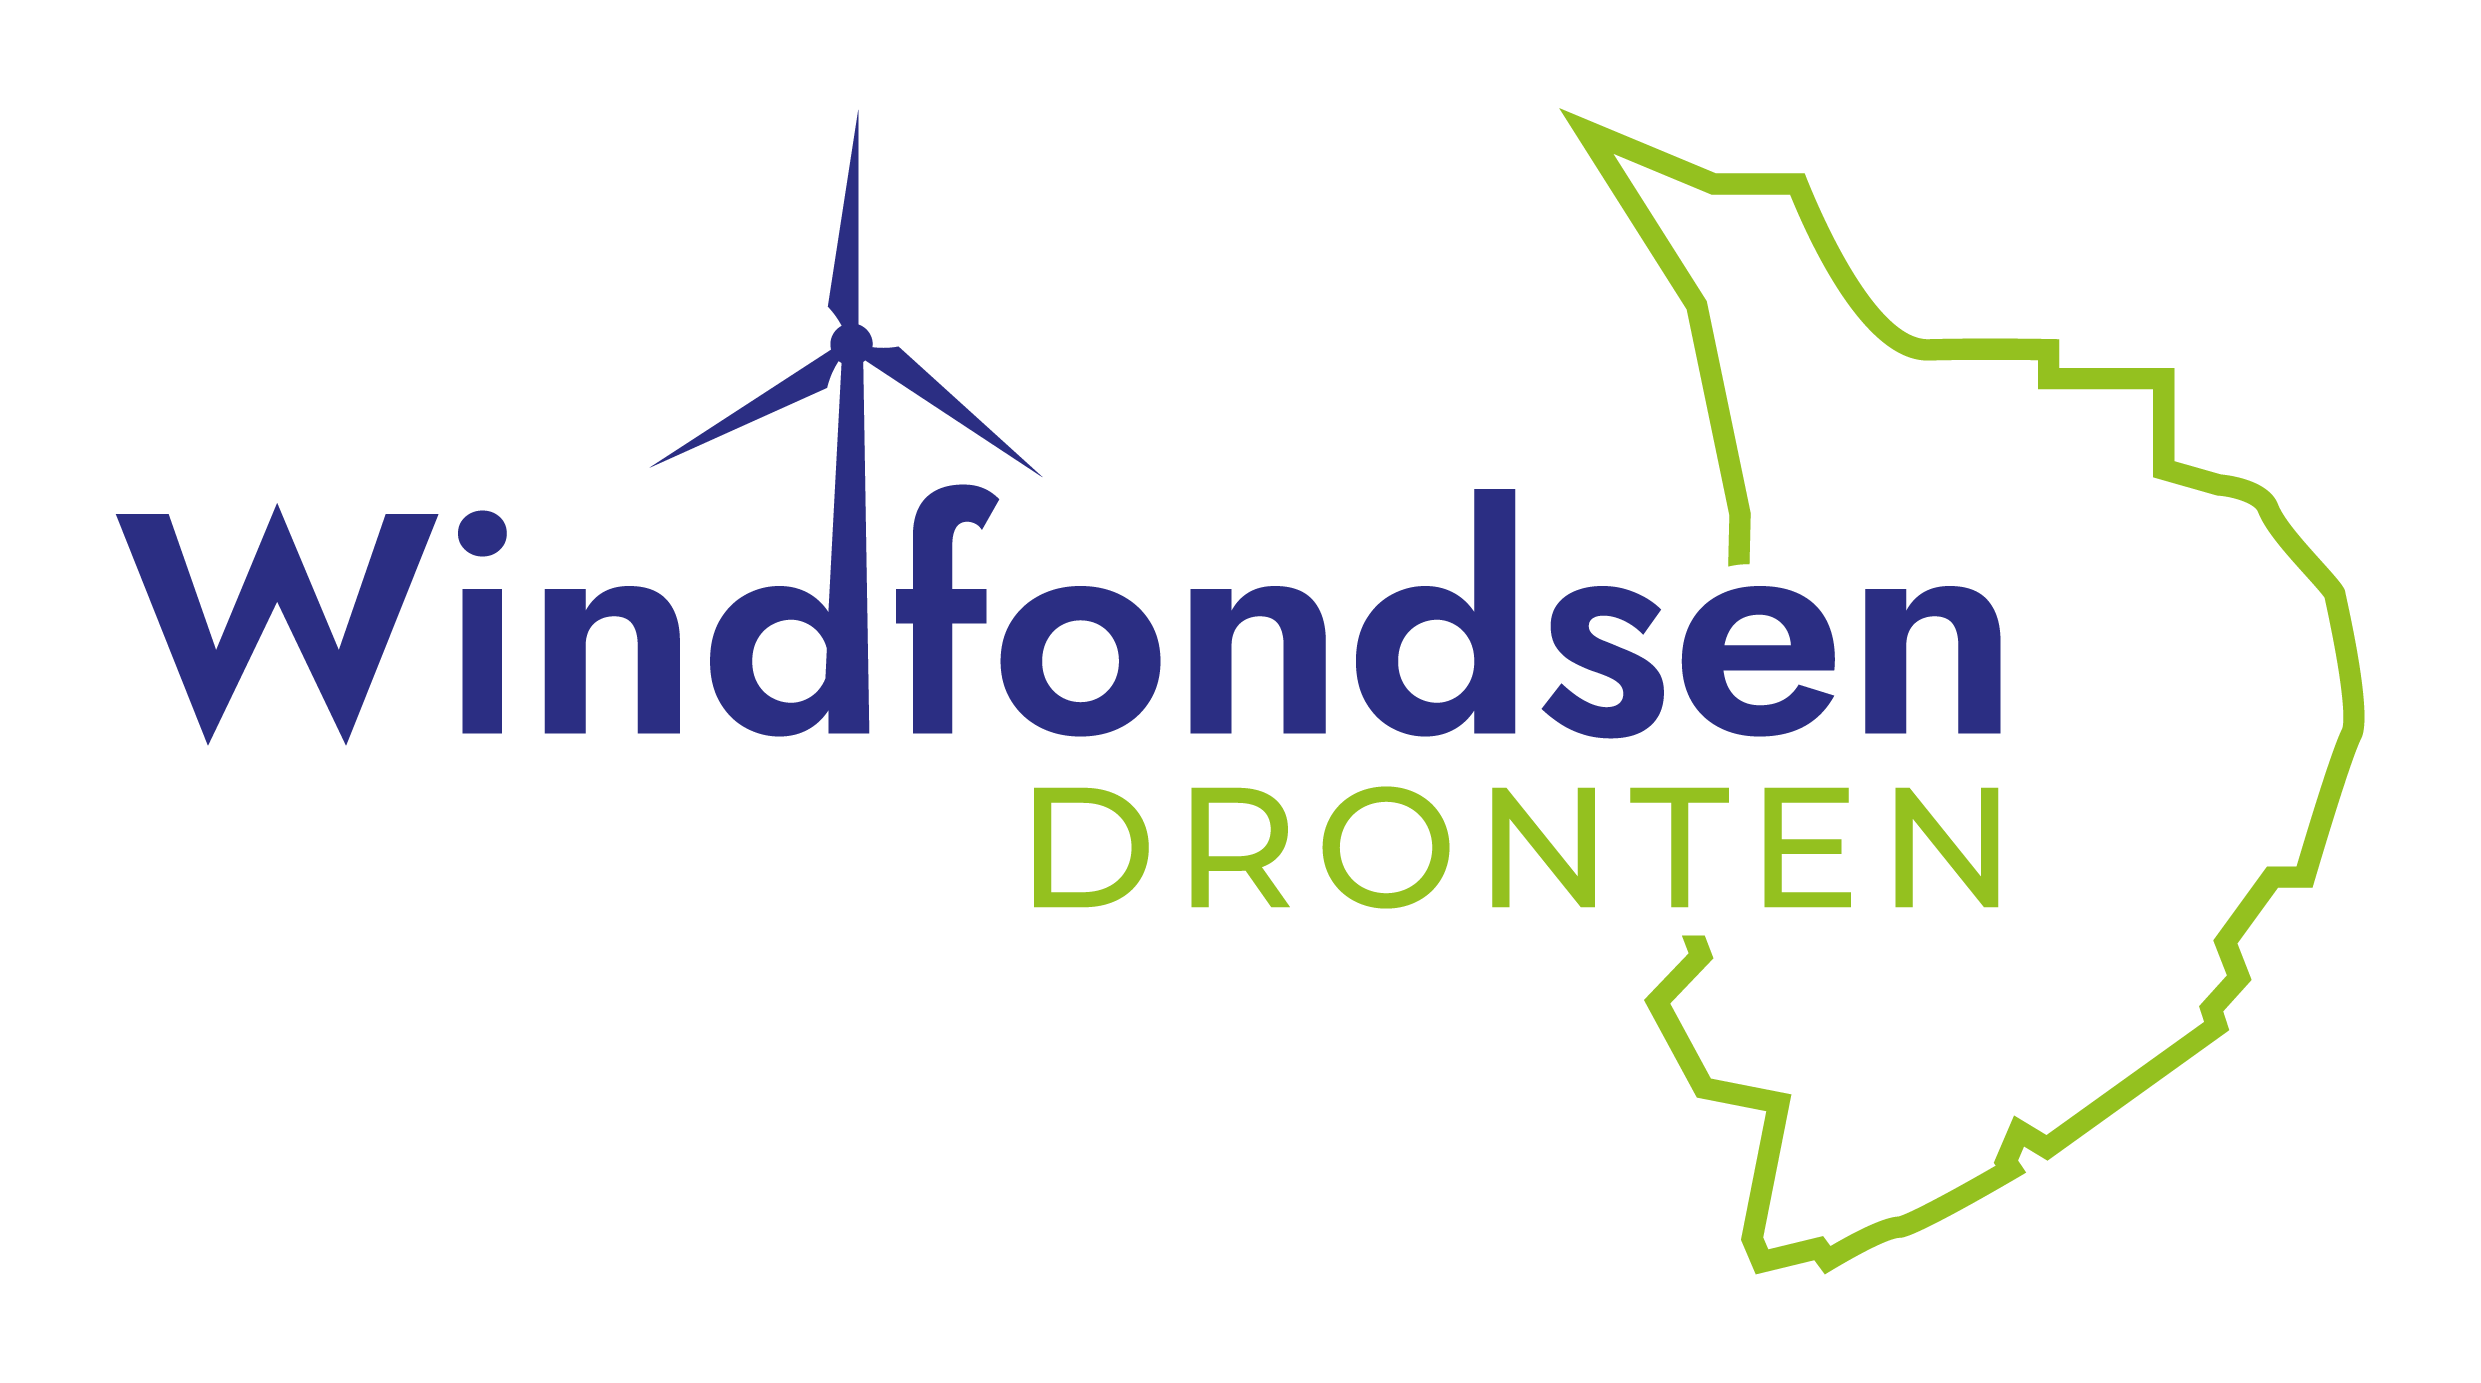 Stichting Windfondsen Dronten